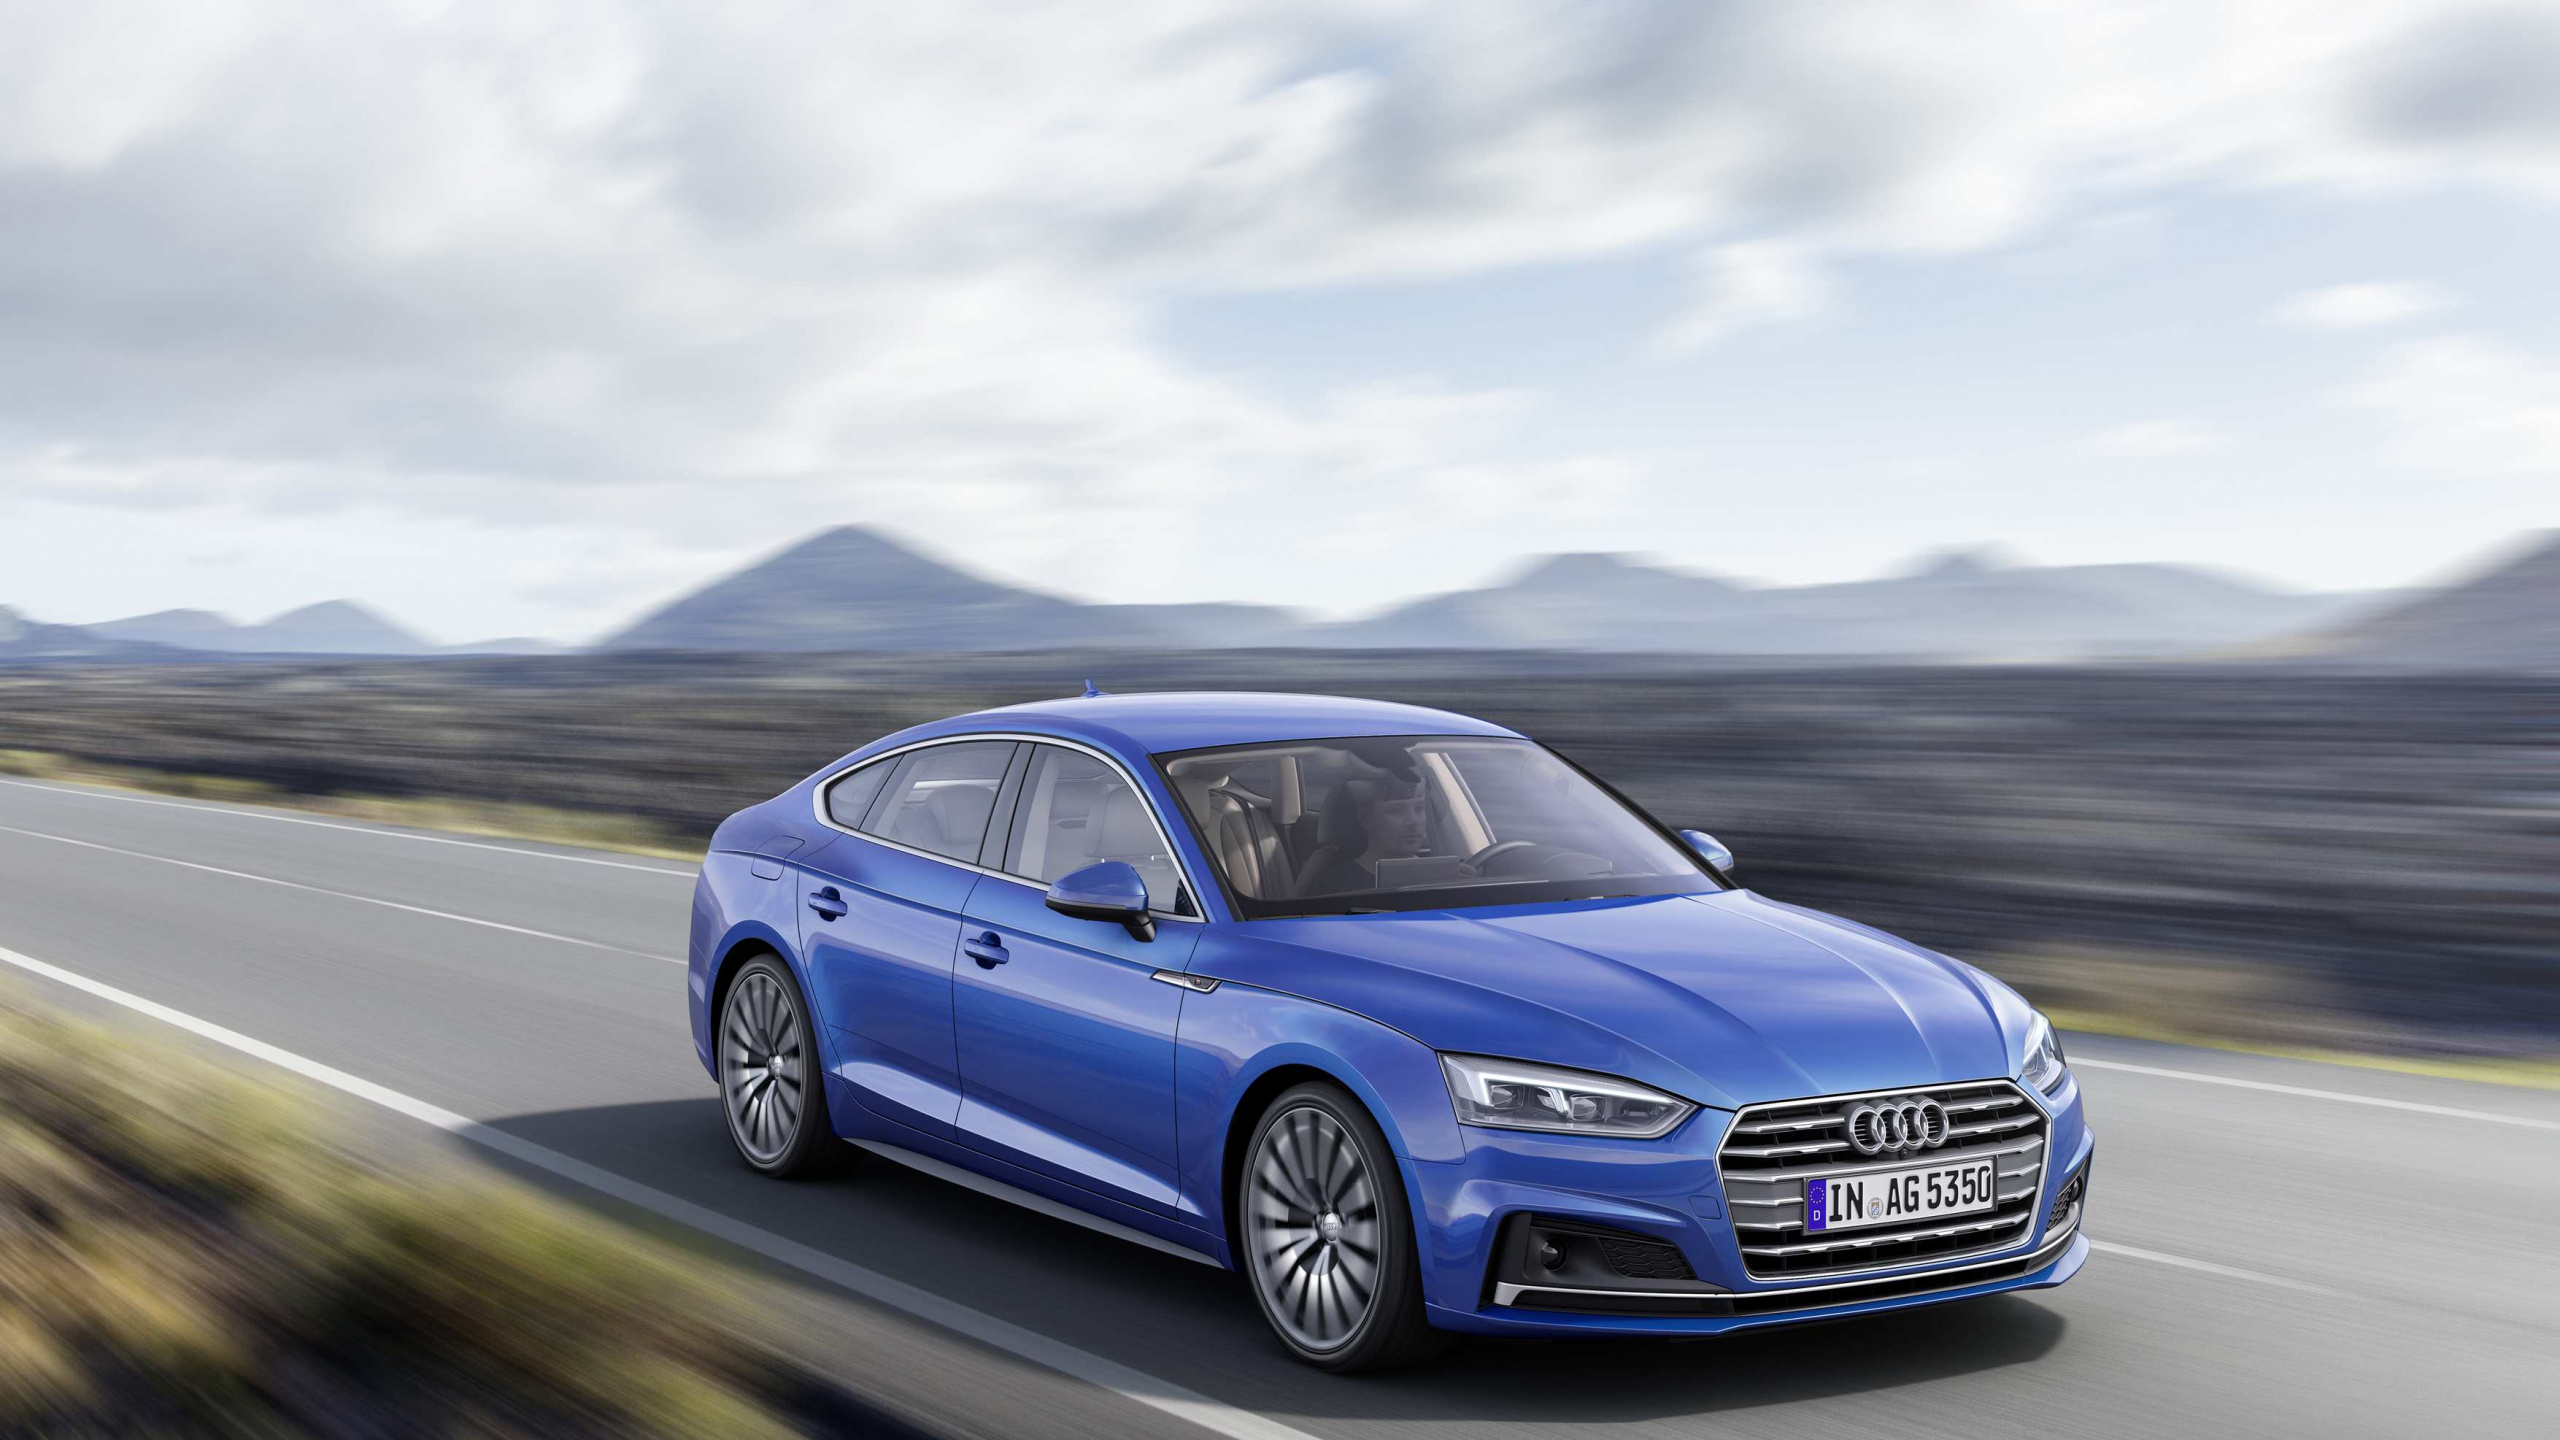 Blauer Audi a 4 Tagsüber Unterwegs. Wallpaper in 2560x1440 Resolution